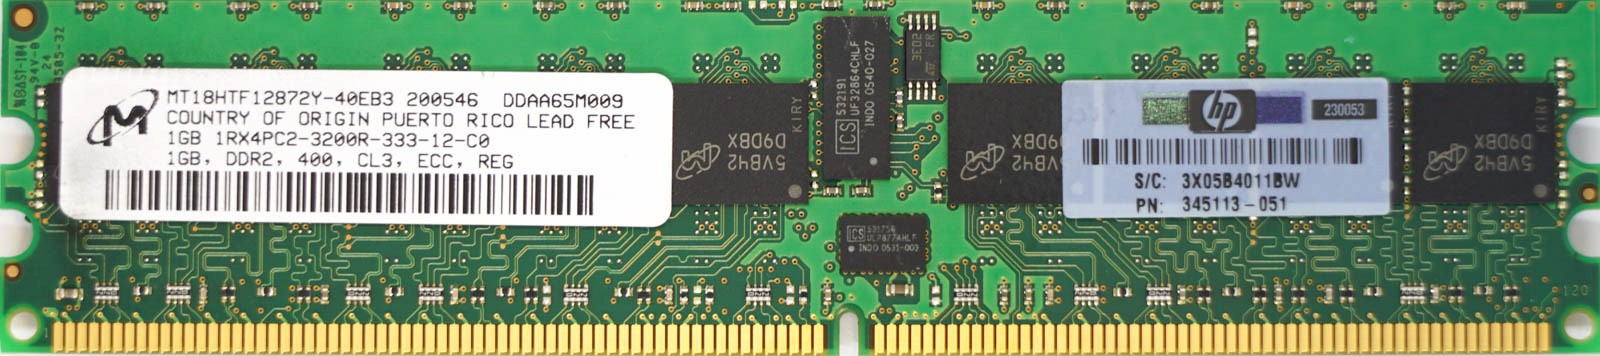 HP (345113-051) - 1GB PC2-3200R (DDR2-400Mhz, 1RX4)